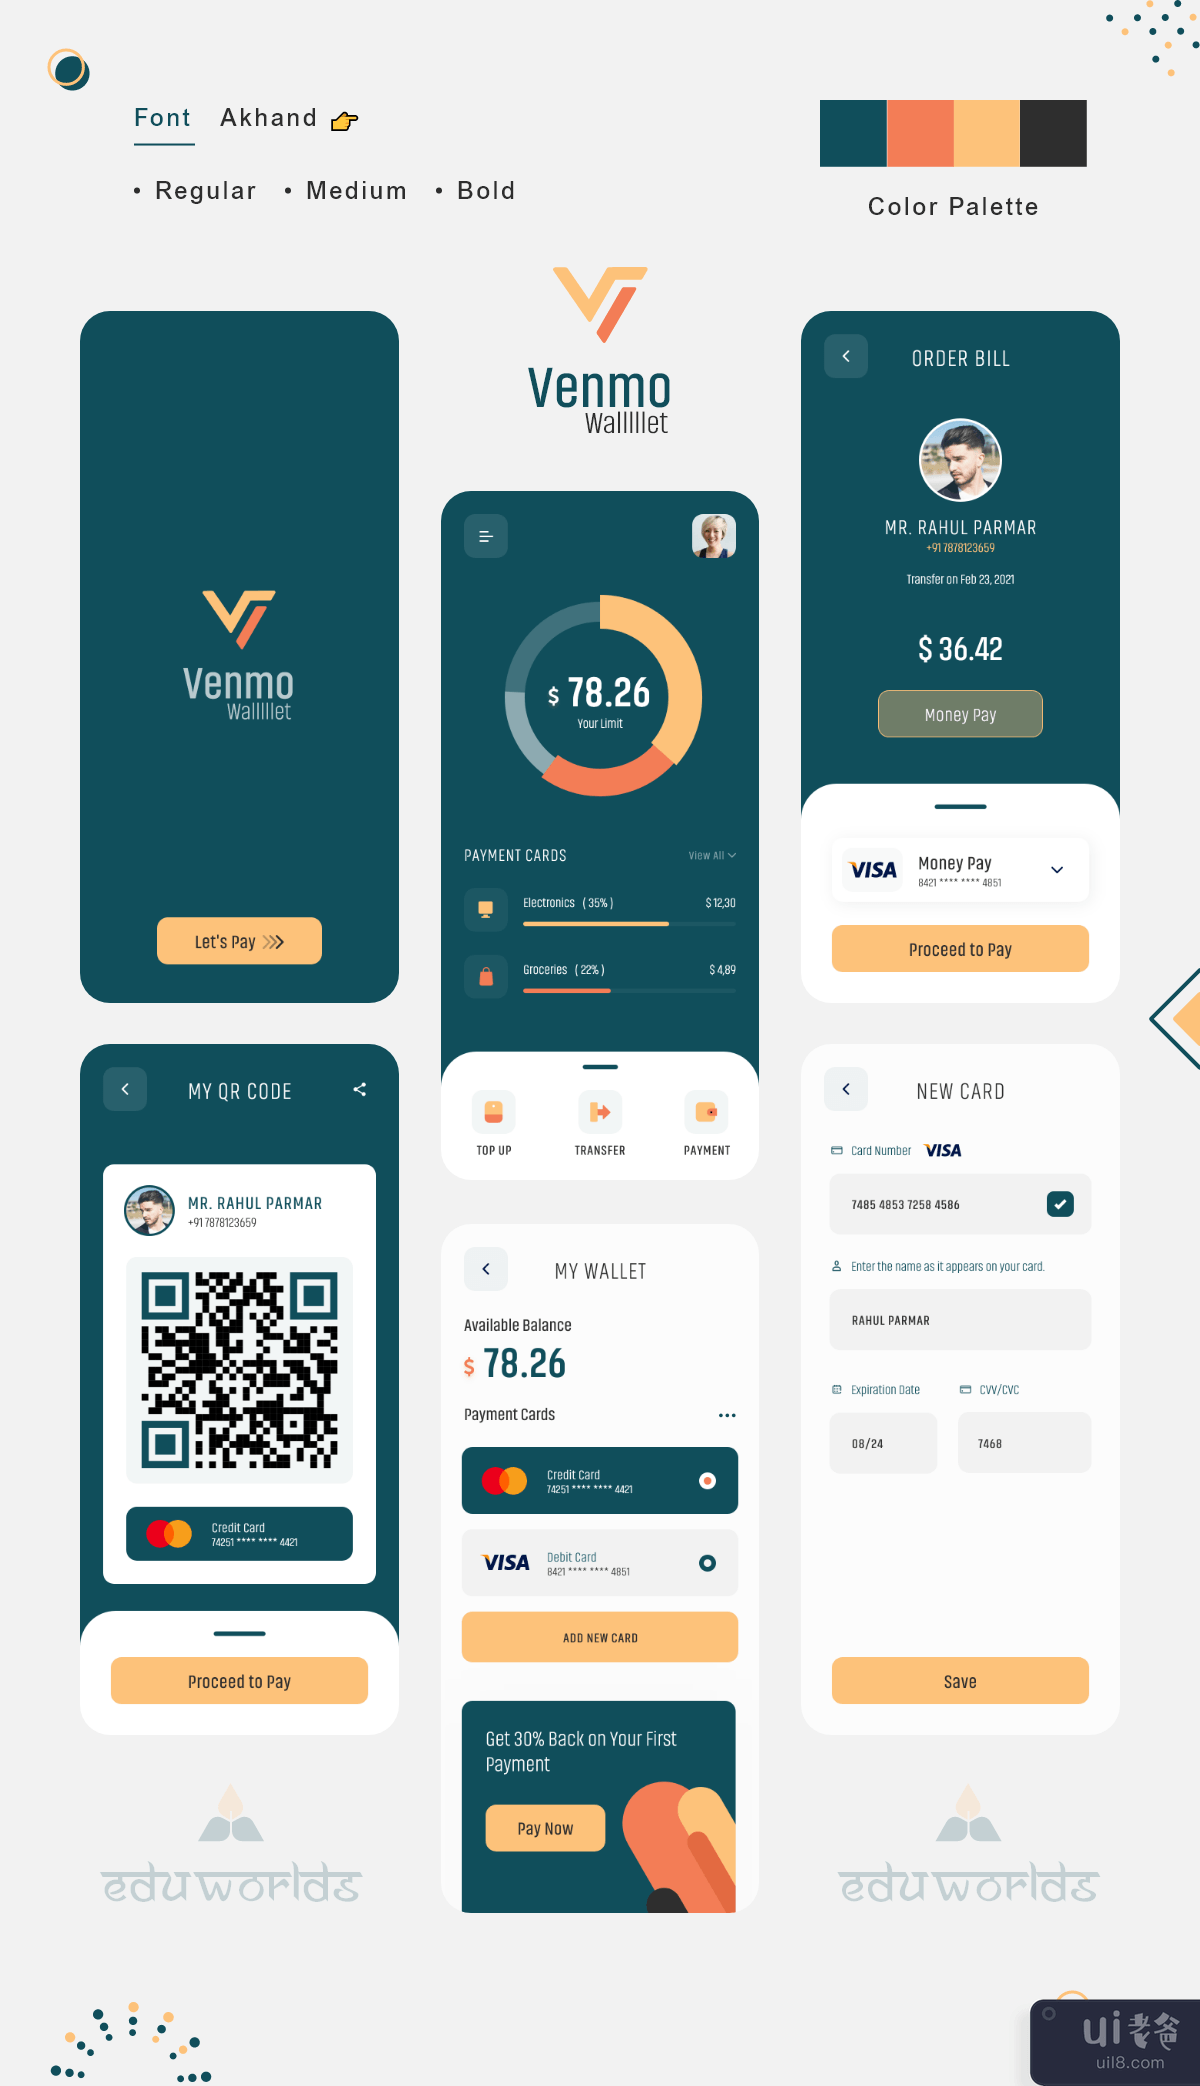 Venmo 钱包支付应用程序(Venmo Wallet Payment App)插图